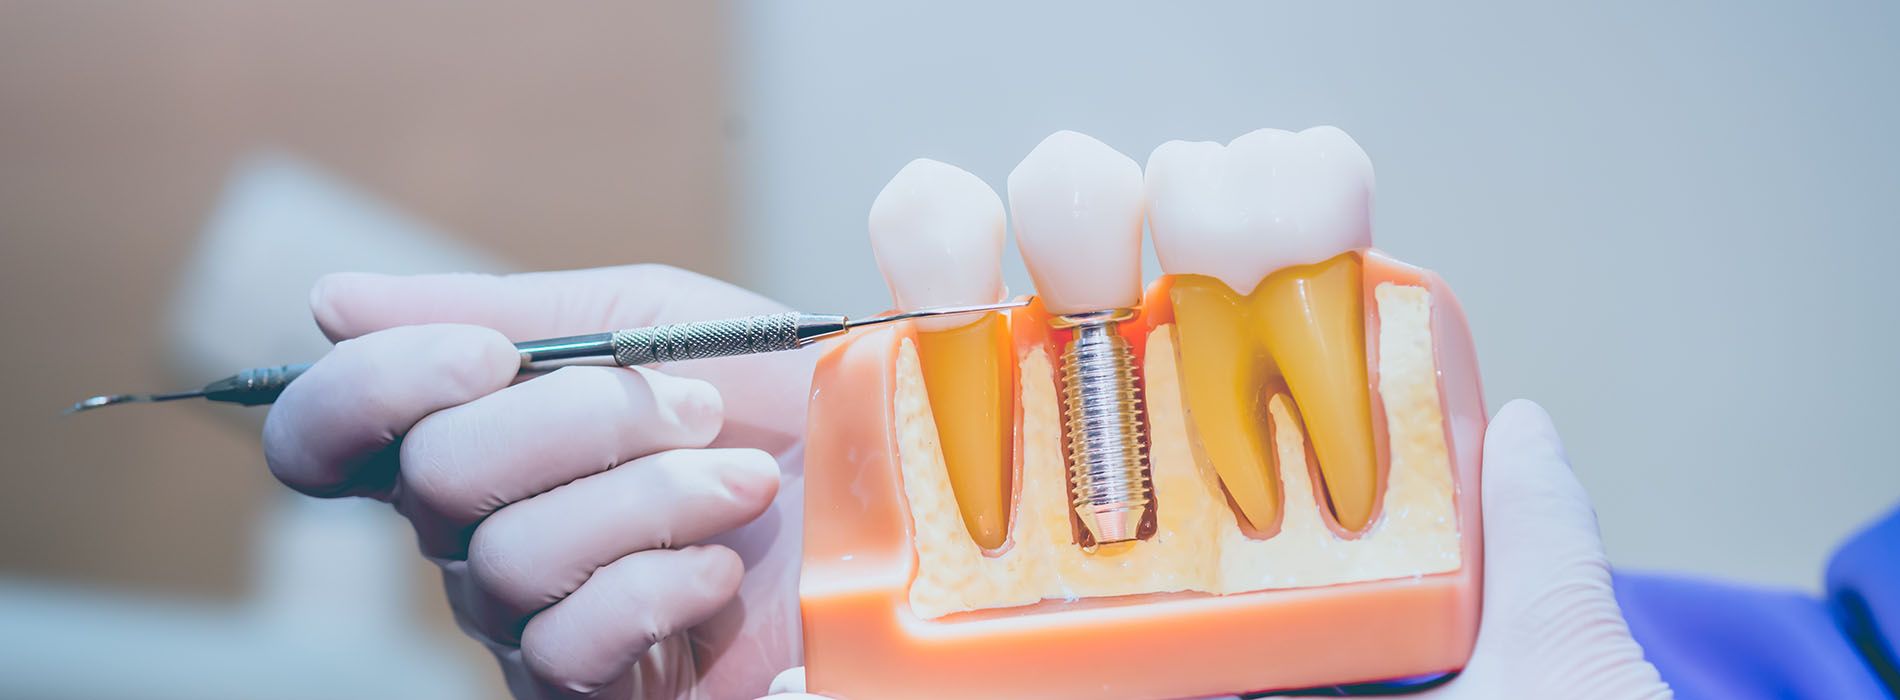 iSmile Dental | Invisalign reg , Ceramic Crowns and Dermal Fillers